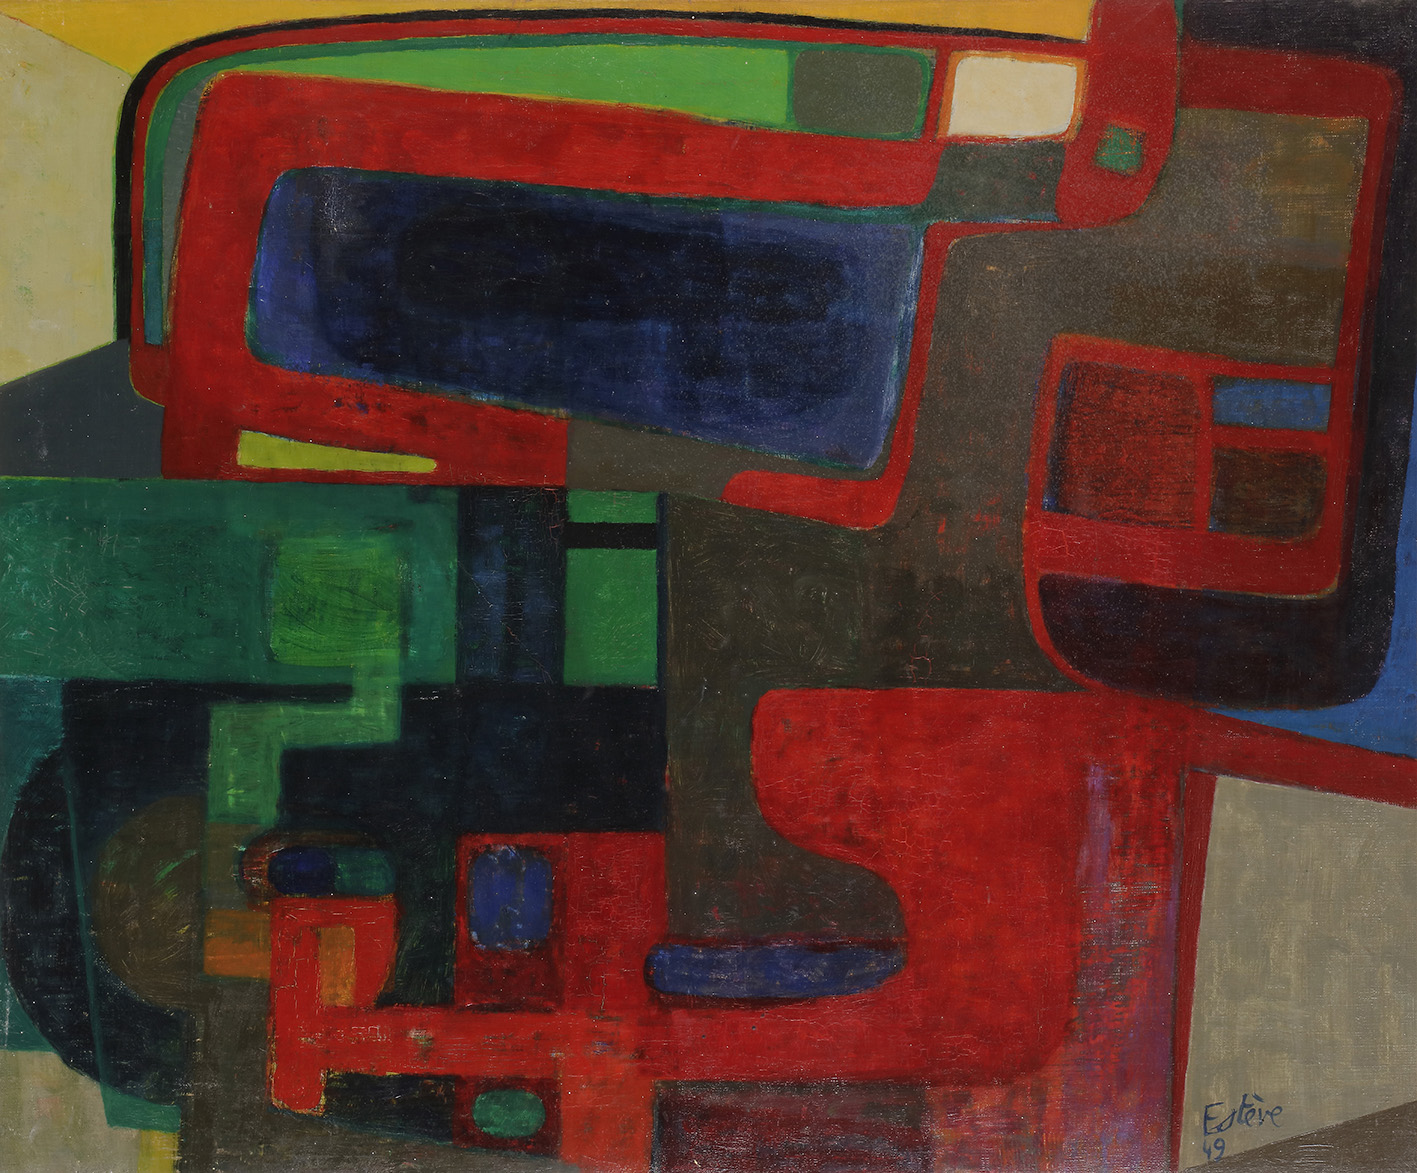 Maurice Estève (1904-2001), Mechanic, 1949, oil on canvas, 50 x 61 cm (detail).Estimate: €50,000/80,000